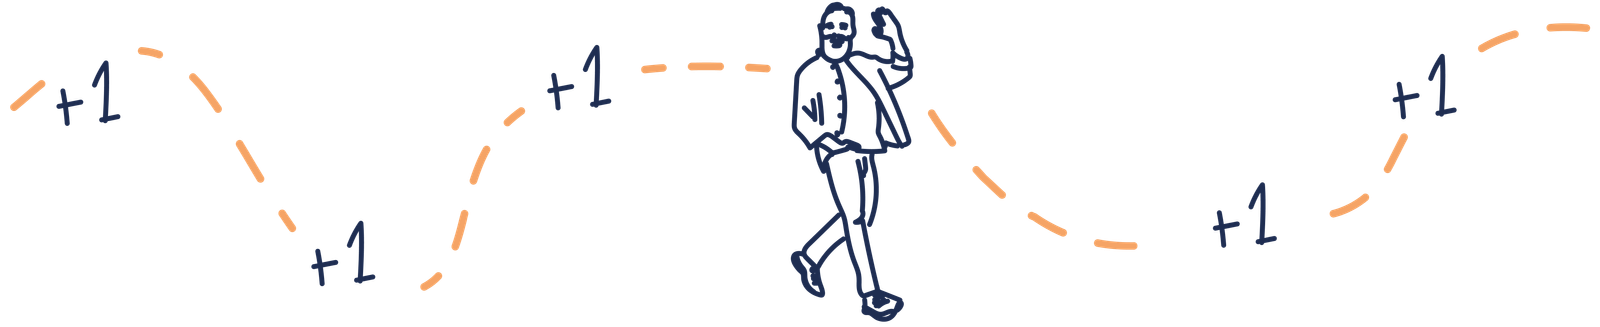 illustration d'une personne qui gagne des bonus au fur et à mesure qu'elle marche